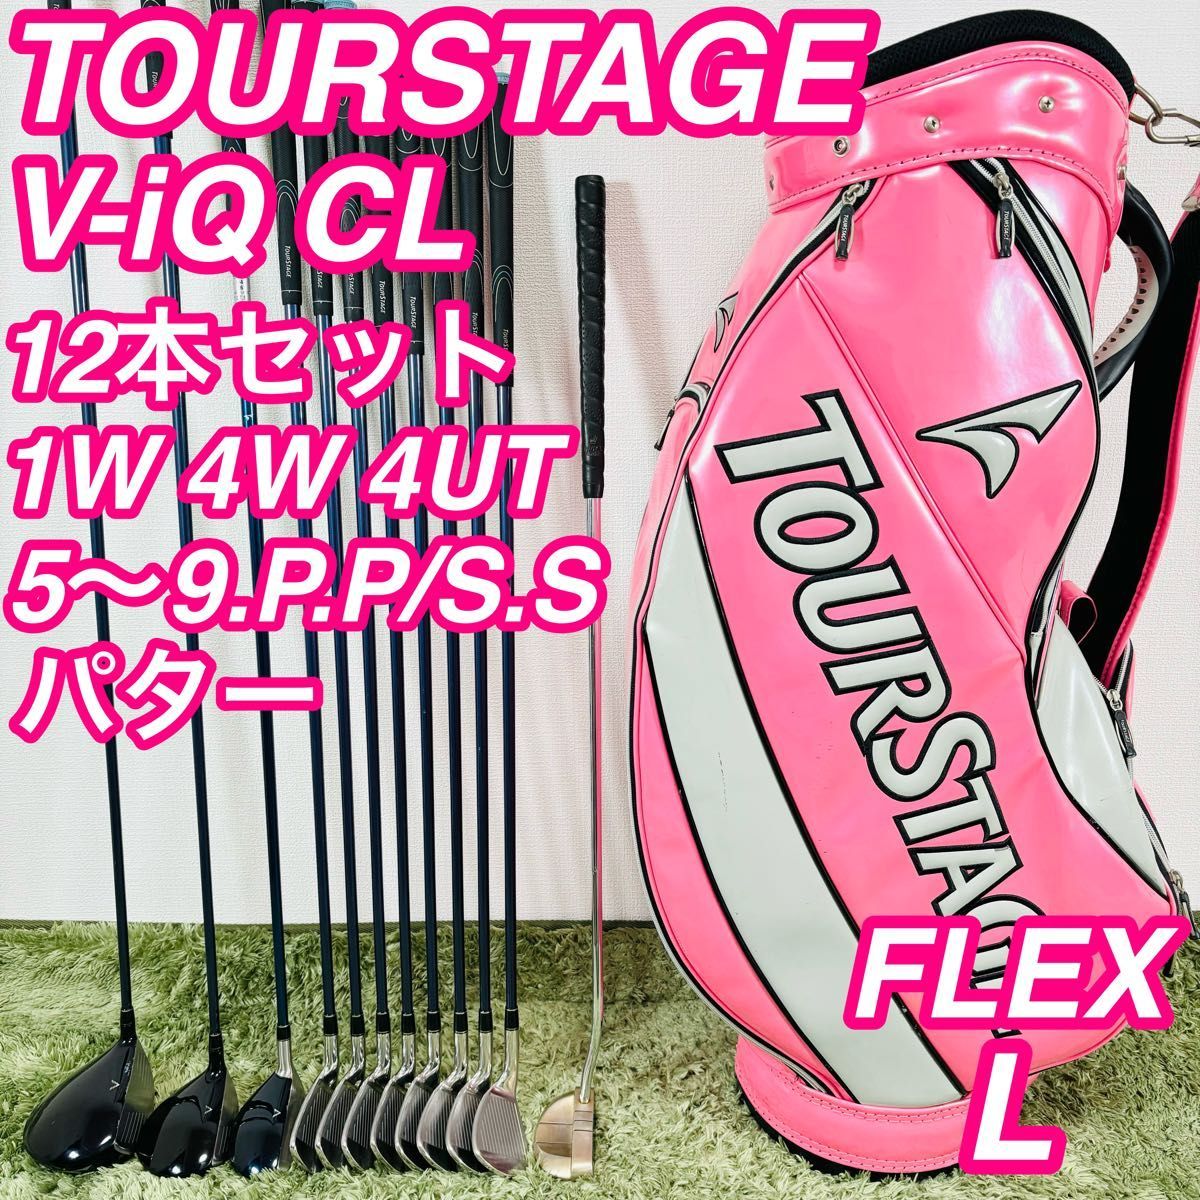 ツアーステージ ViQ CL 12本セット レディースゴルフ 初心者 かわいい TOURSTAGE 女性 コースデビュー 右利き 人気モデル